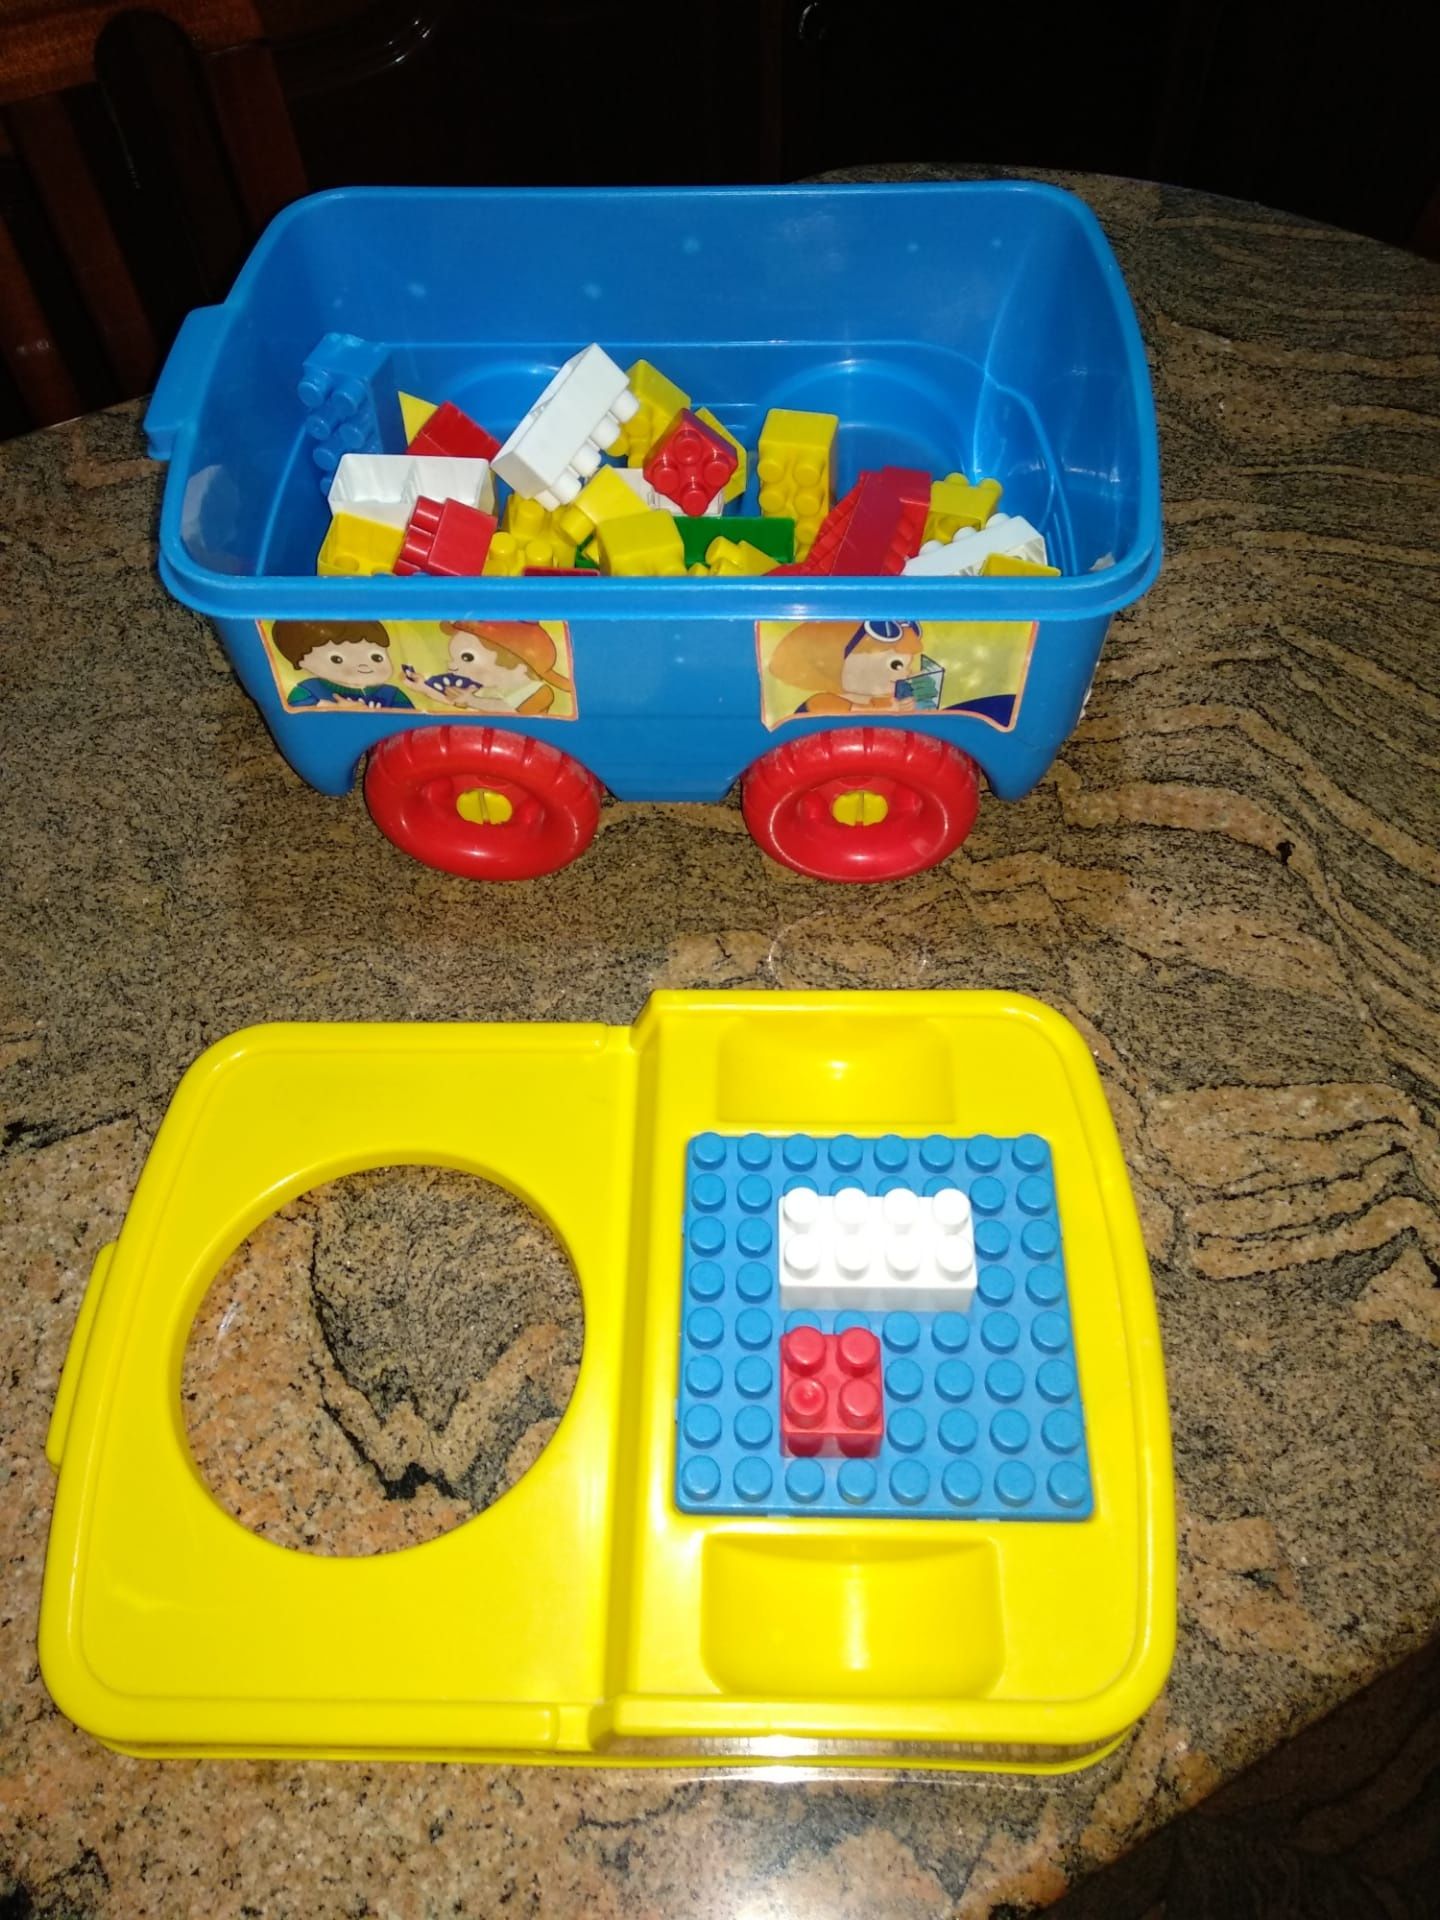 Carro c/ peças de Lego coloridas